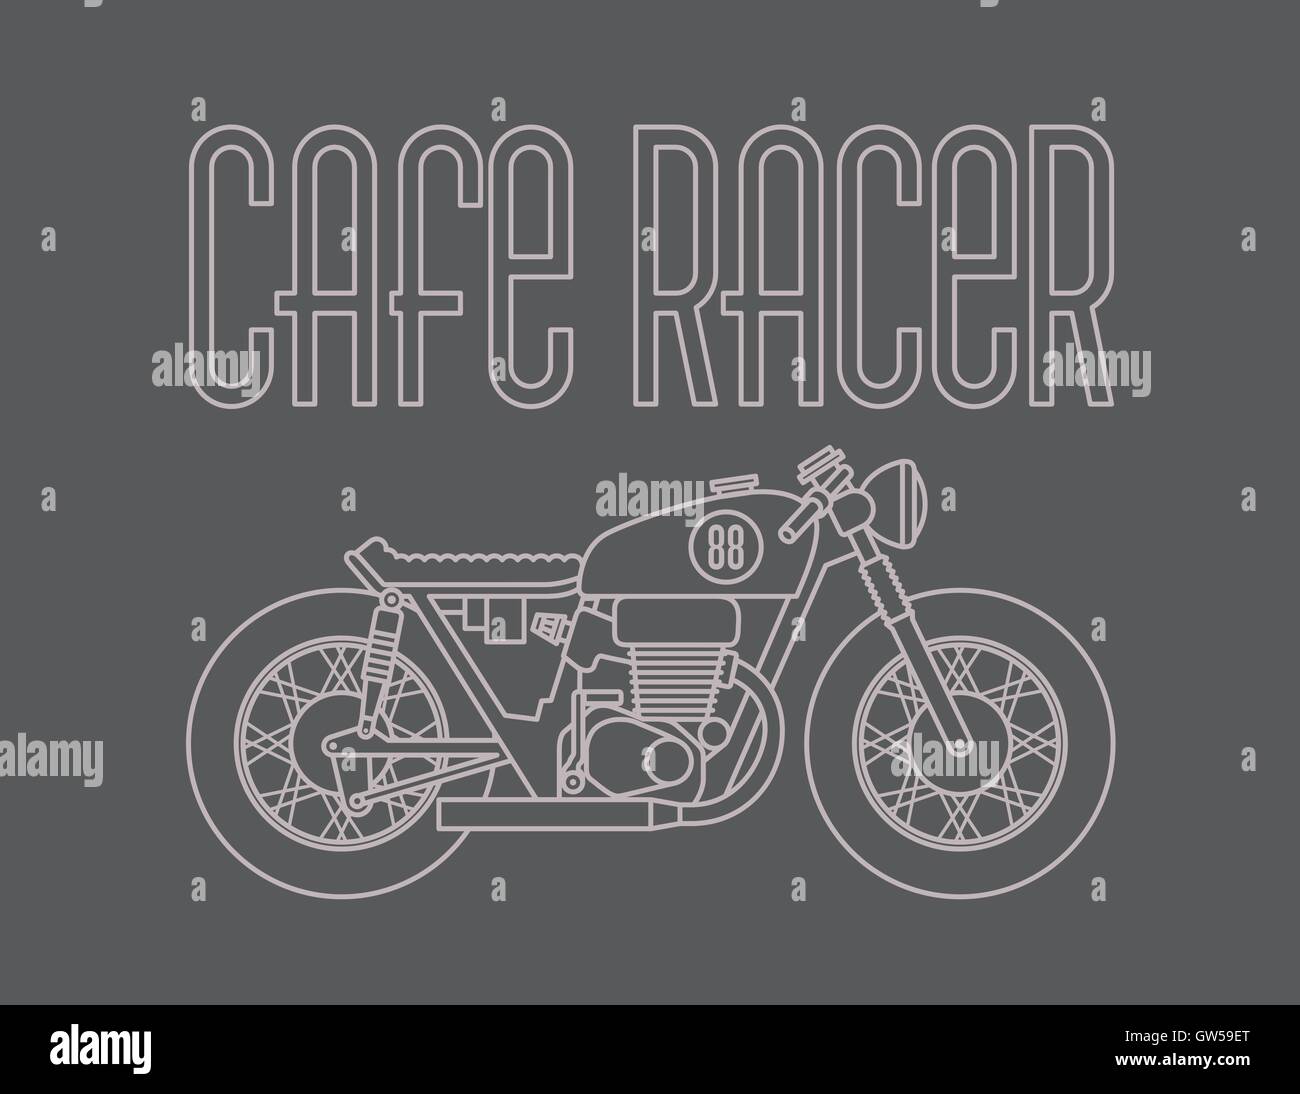 Cafe Racer Motorcycle Vector Design. Avec moto vintage Cafe Racer graphiques. Schéma simplifié le style de dessin. Illustration de Vecteur